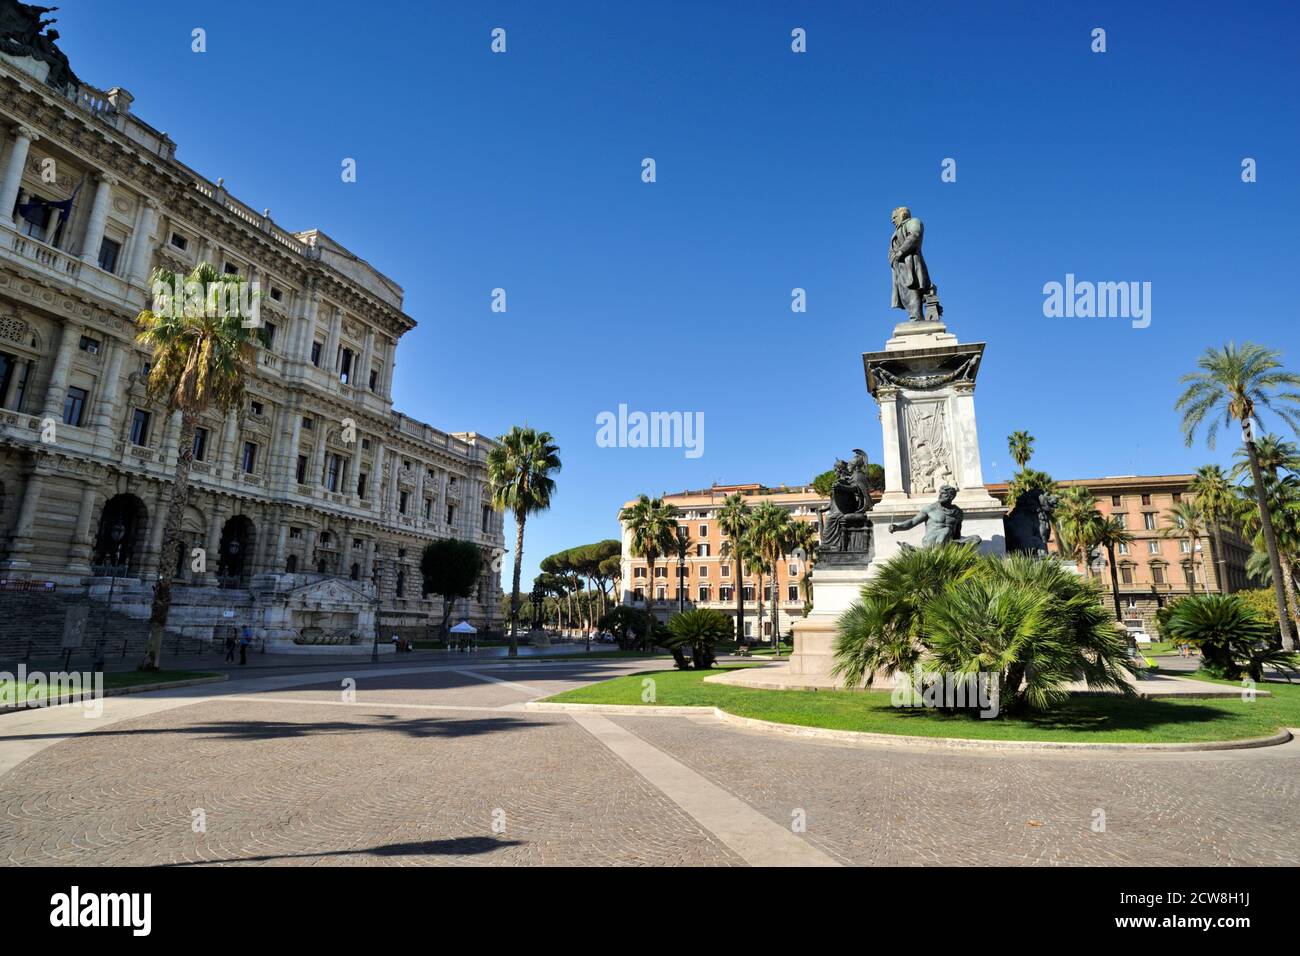 Palazzo di giustizia e monumento Cavour, Piazza Cavour, Roma, Italia Foto Stock